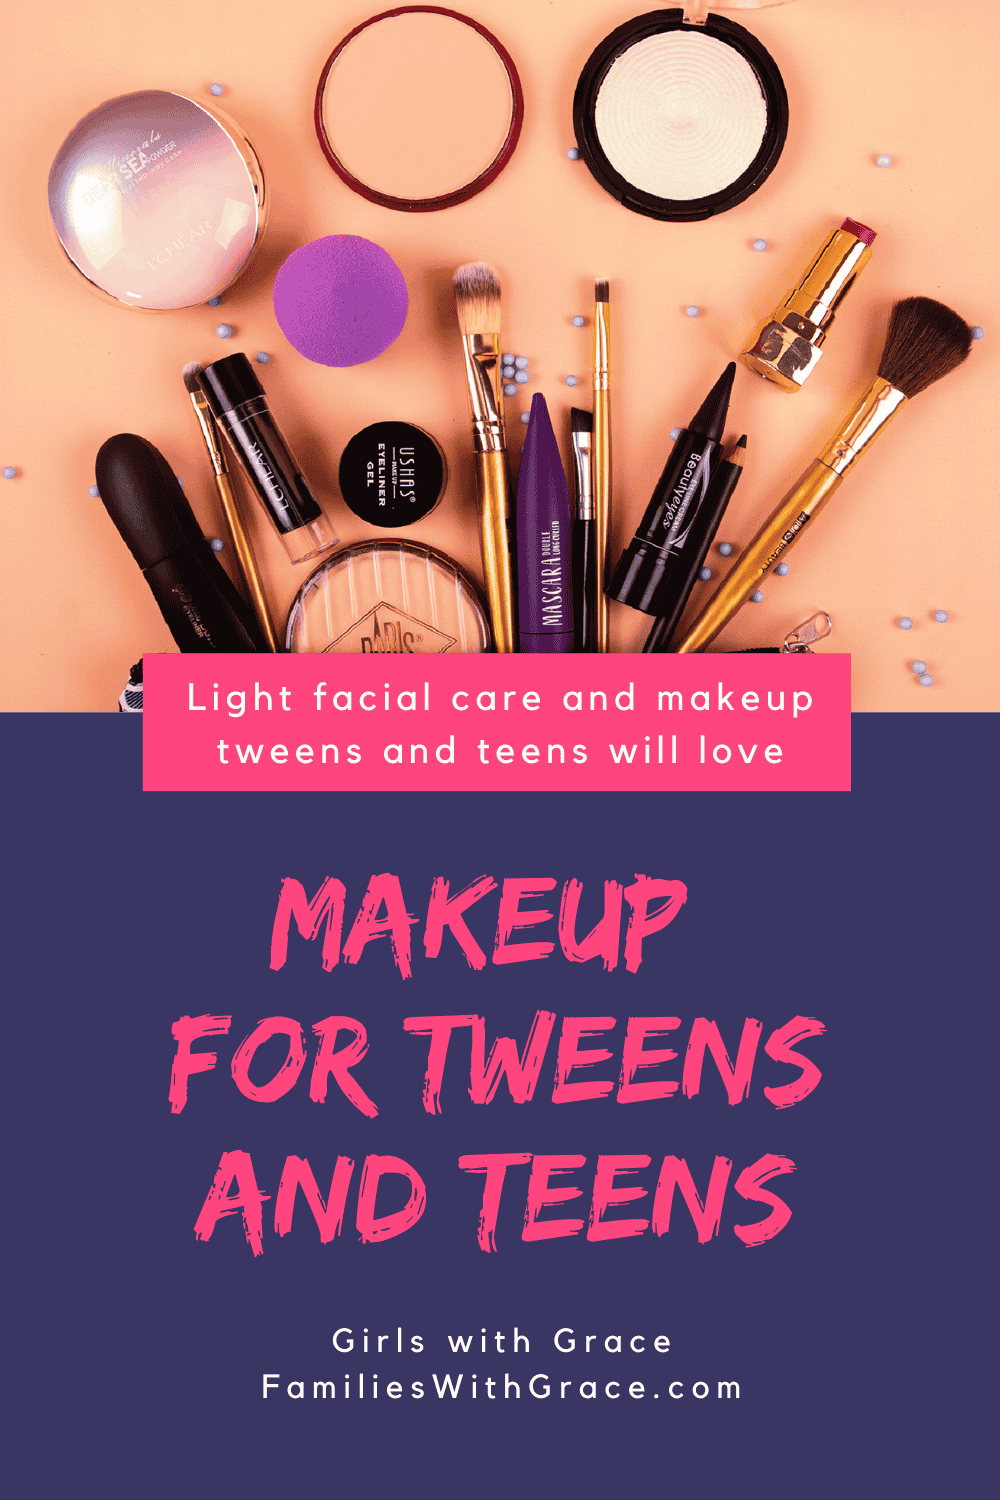 Makeup for tweens and teens